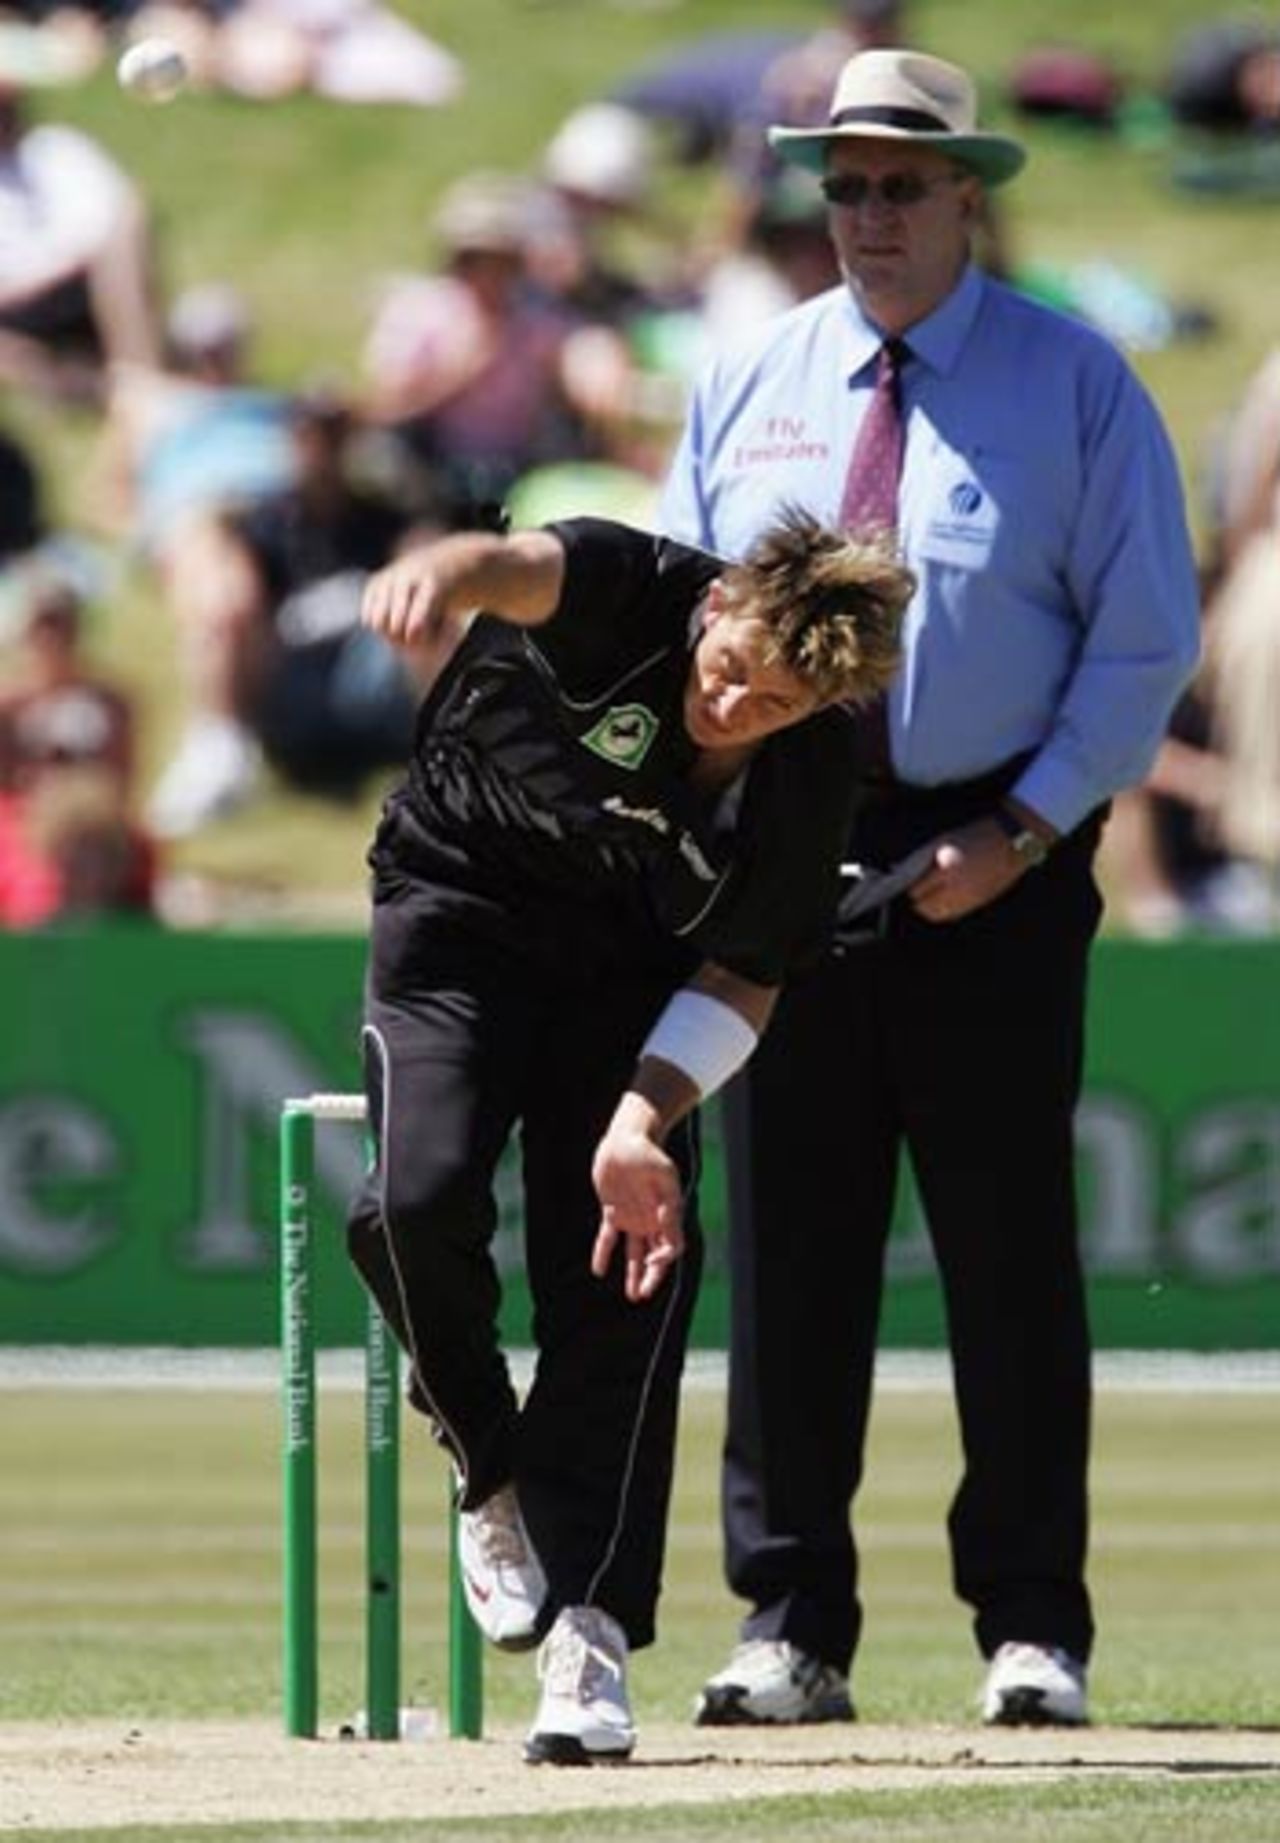 Shane Bond lets one rip, New Zealand v Sri Lanka, 1st ODI, Queenstown, December 31, 2005